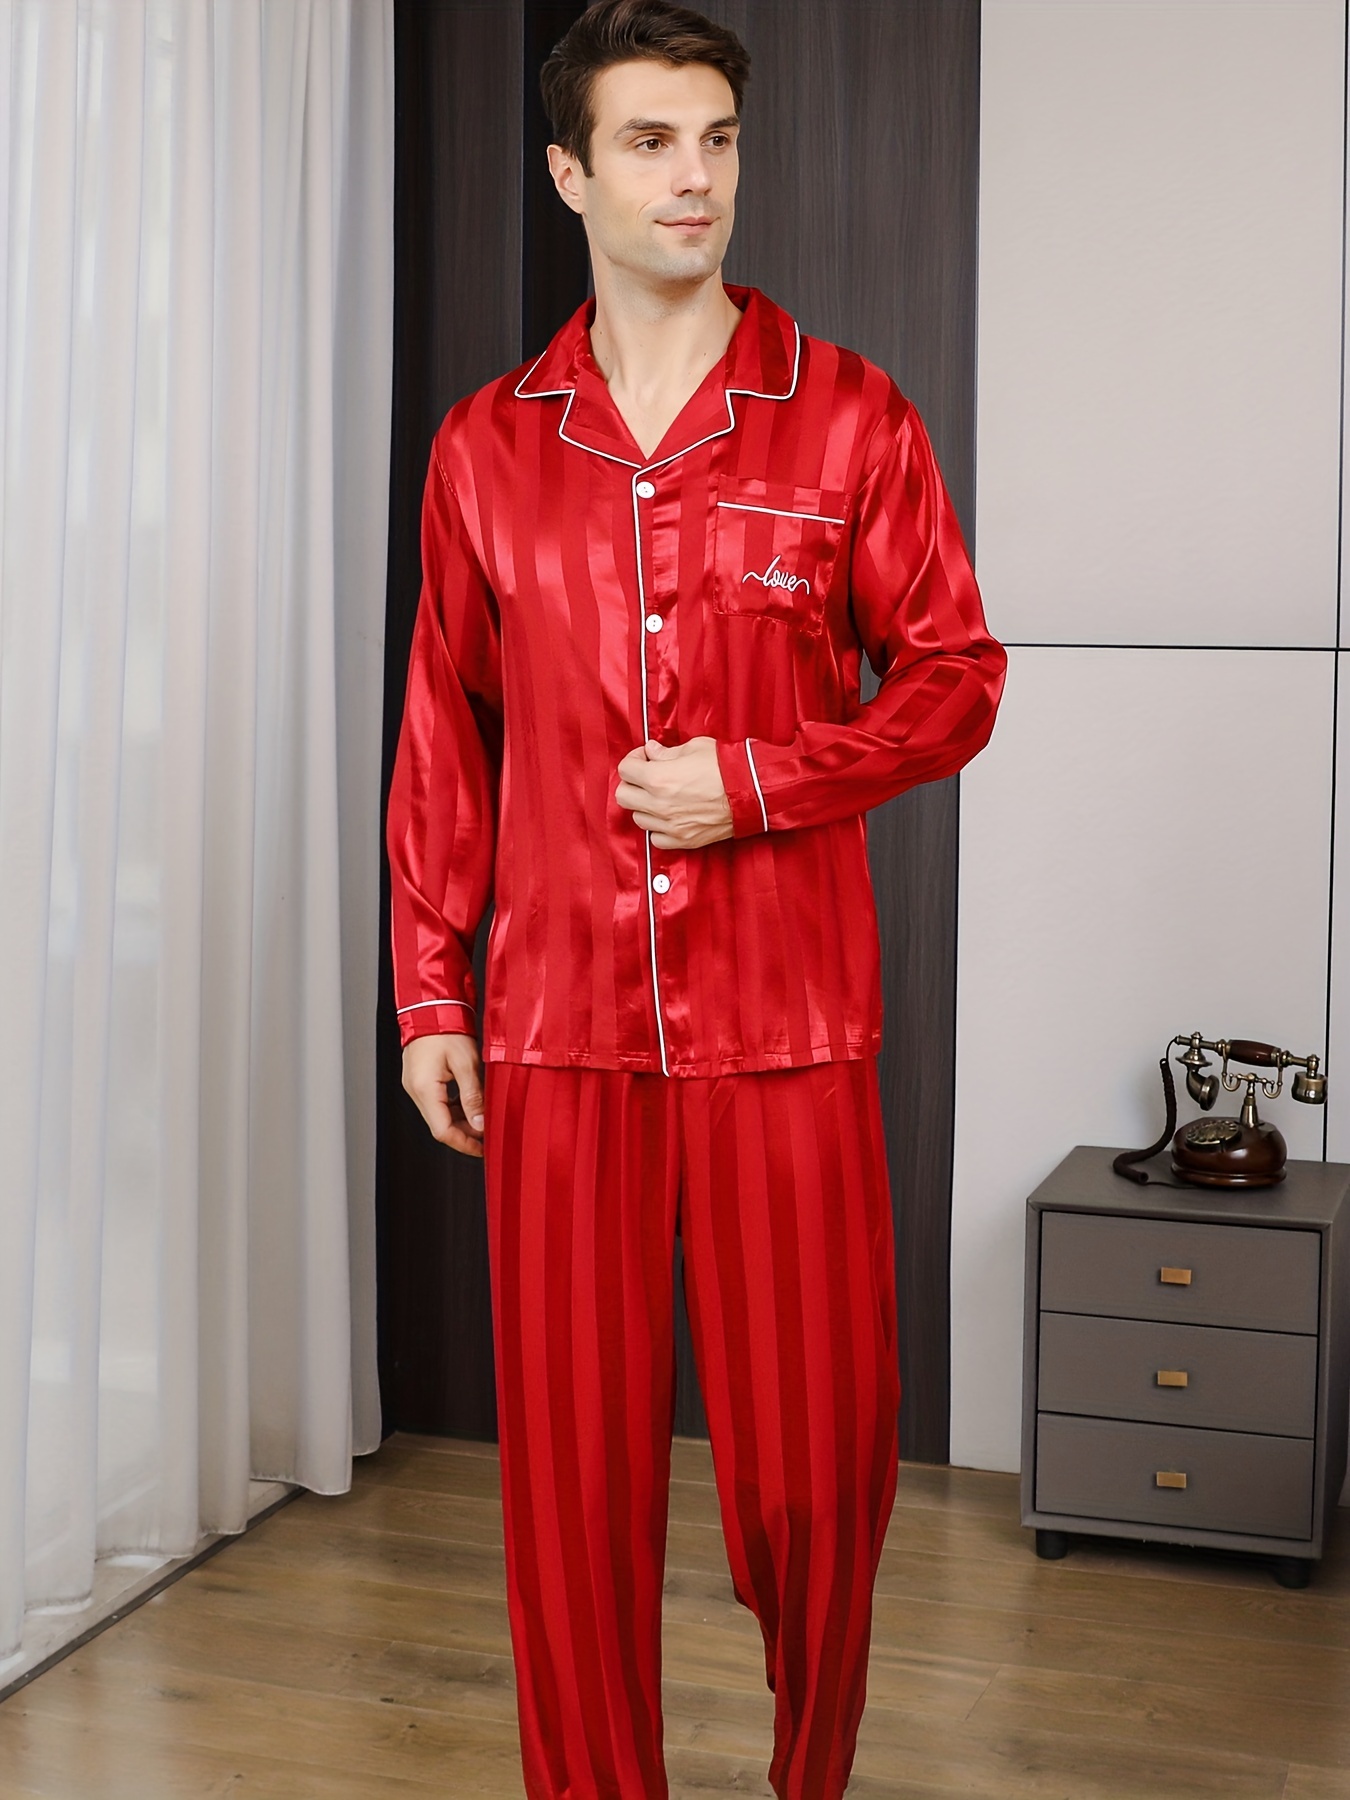 STJDM Camisón, conjunto de pijama fino de seda de hielo para hombre, pijama  con estampado de pijamas…Ver más STJDM Camisón, conjunto de pijama fino de